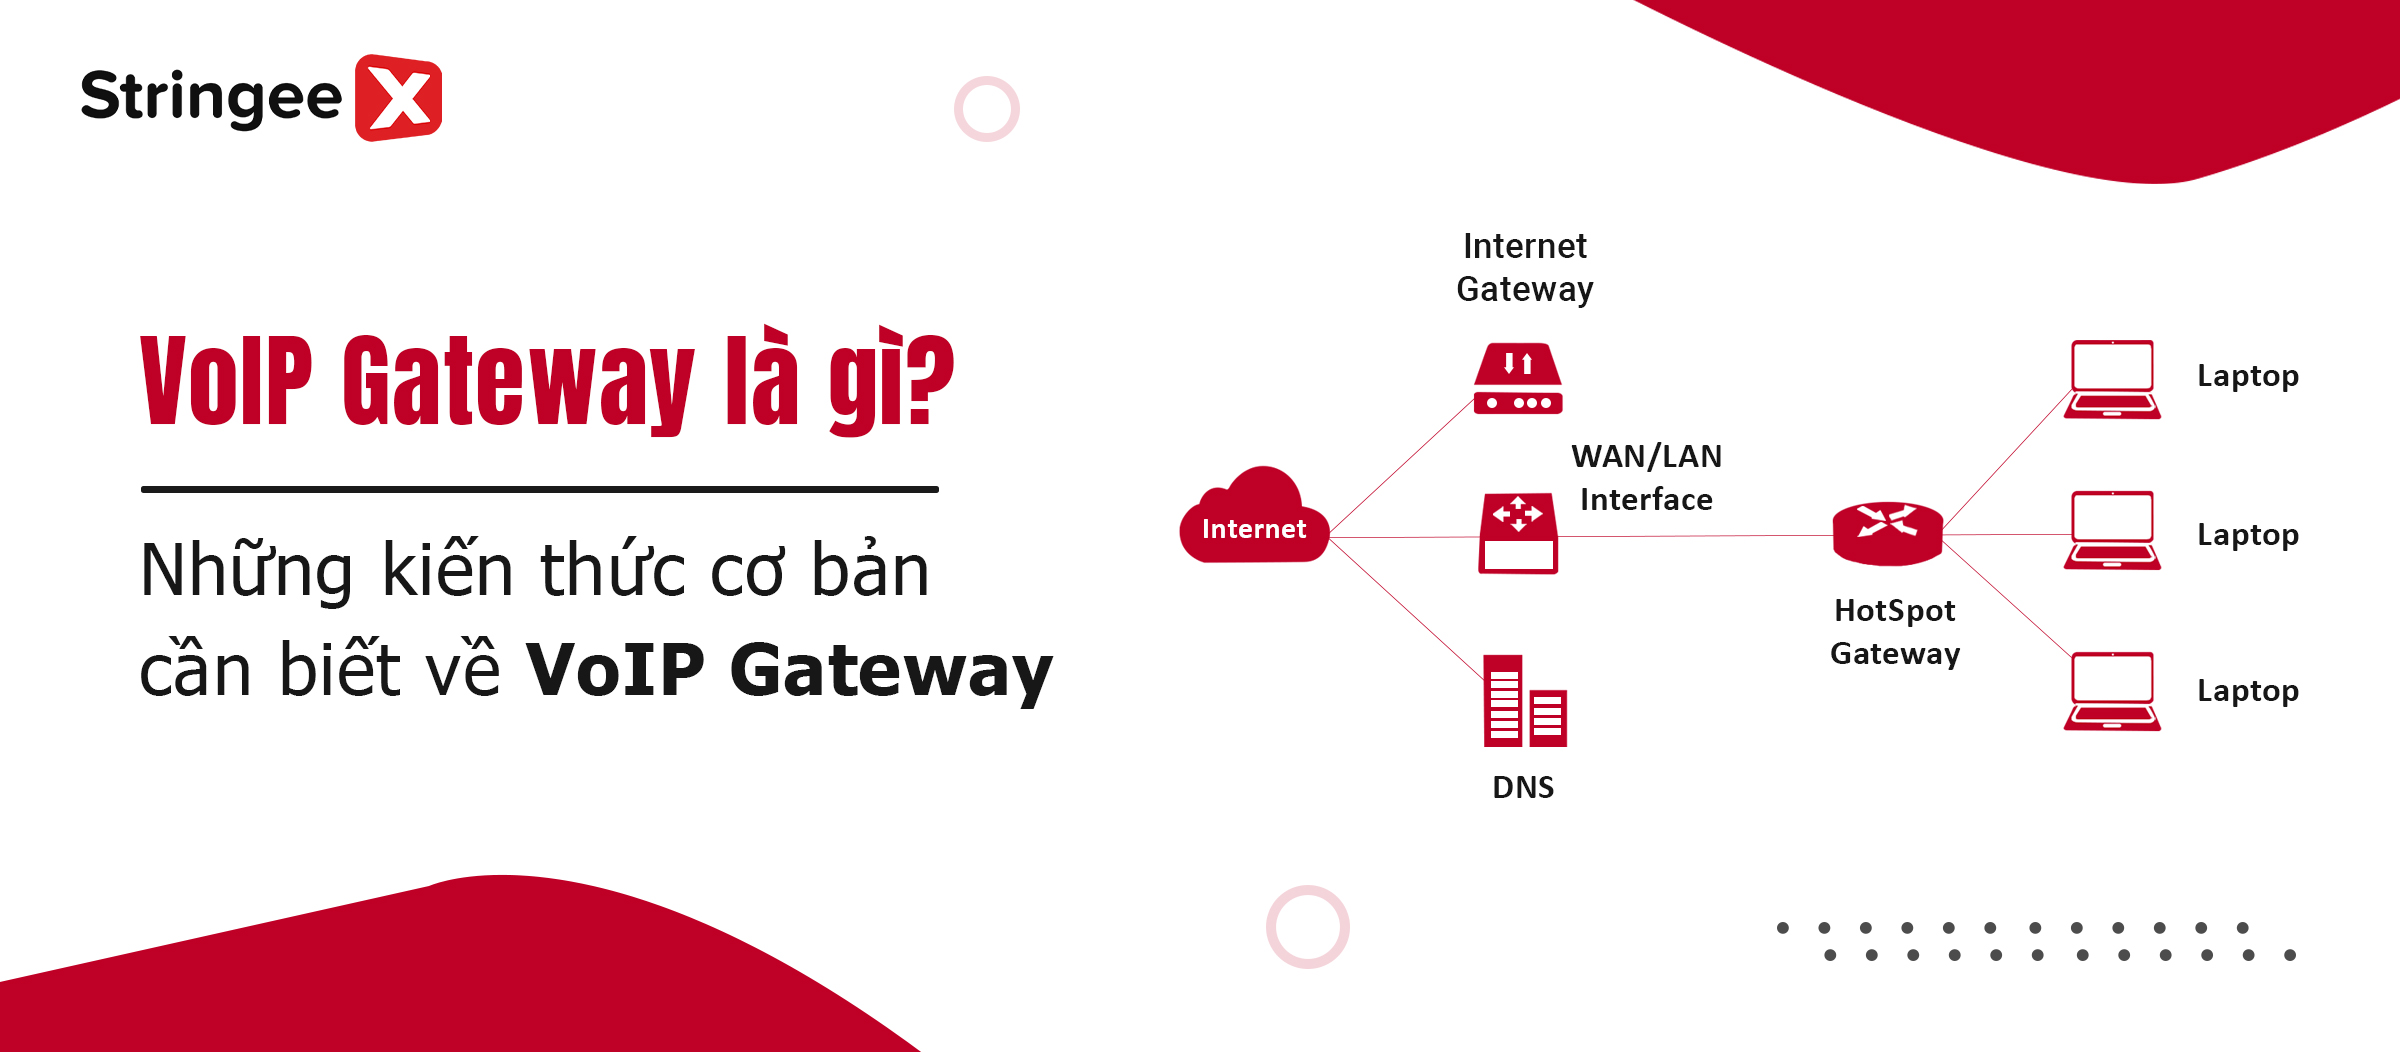 VoIP Gateway là gì? Những kiến thức cơ bản cần biết về VoIP Gateway